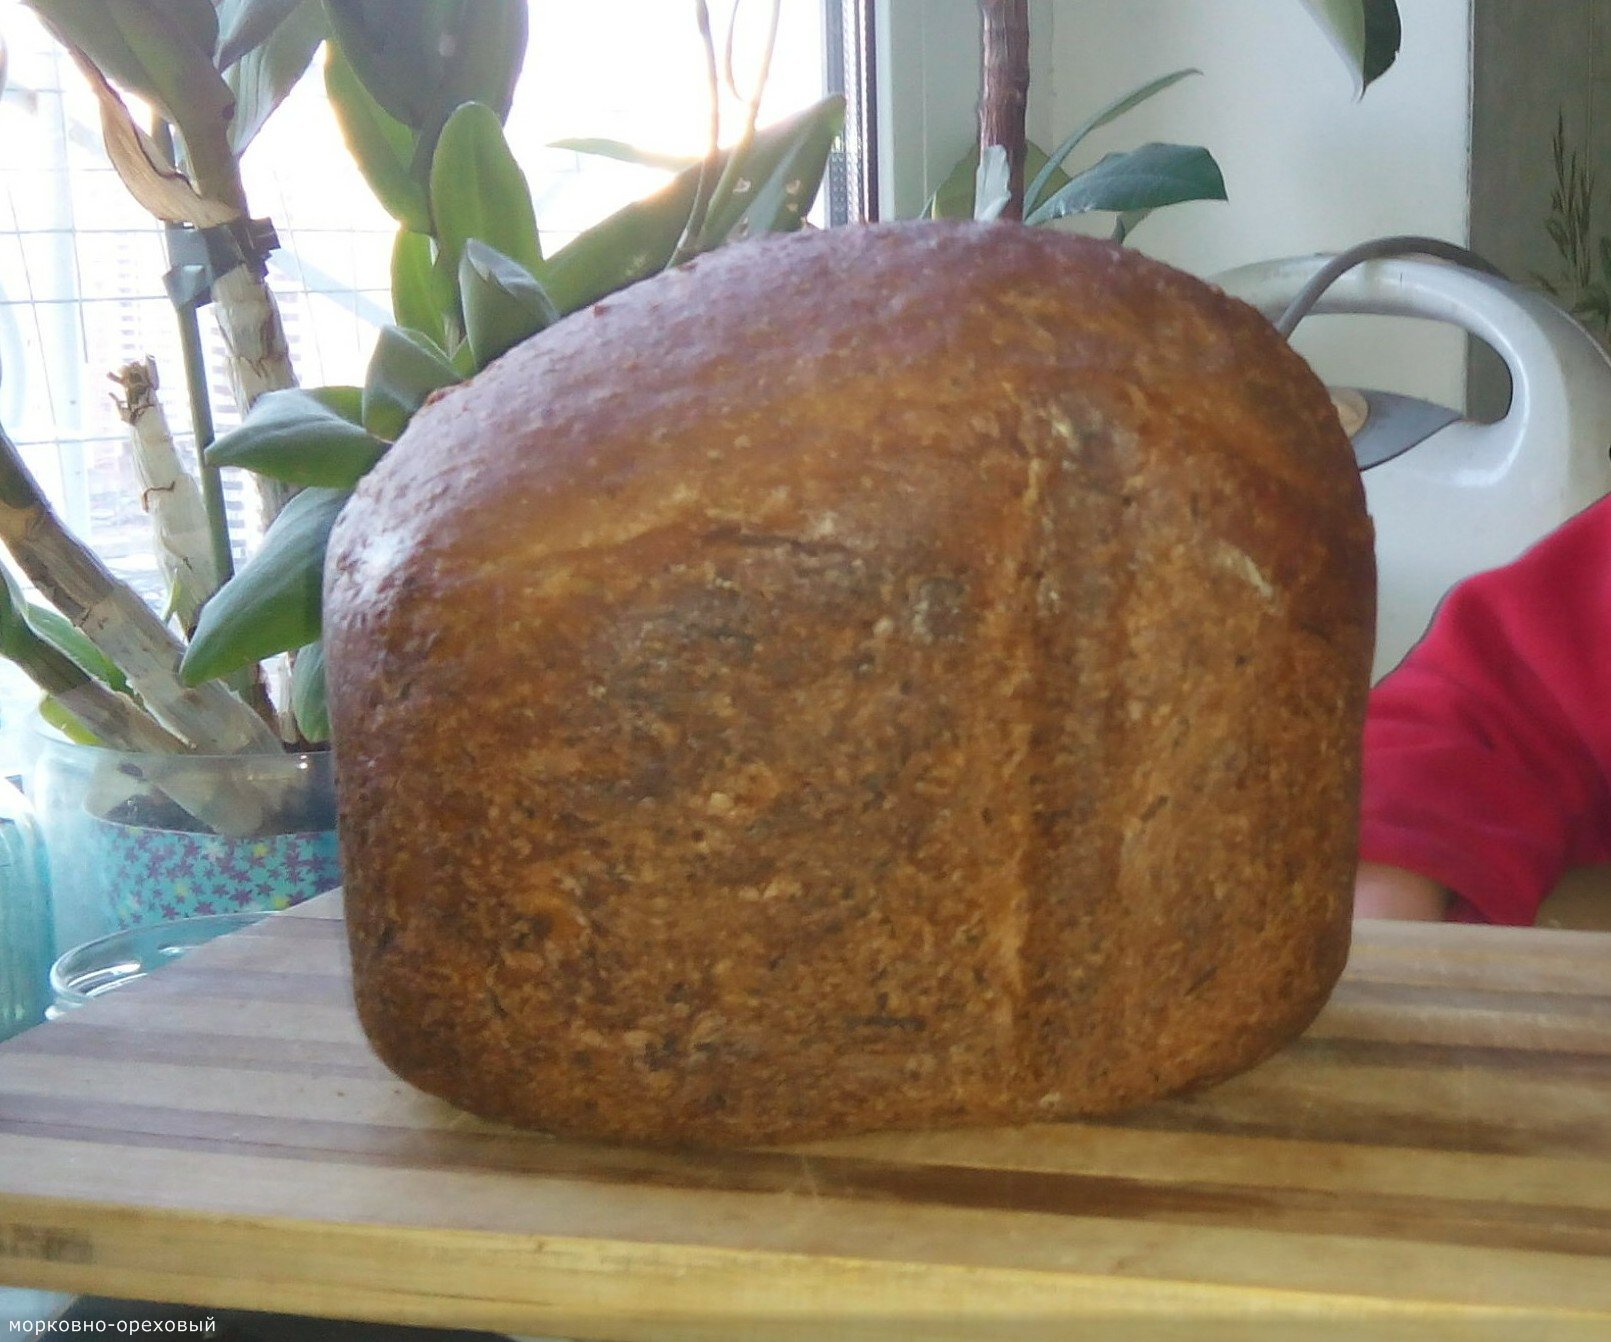 לחם גזר עם אגוזי מלך בתוצרת לחם